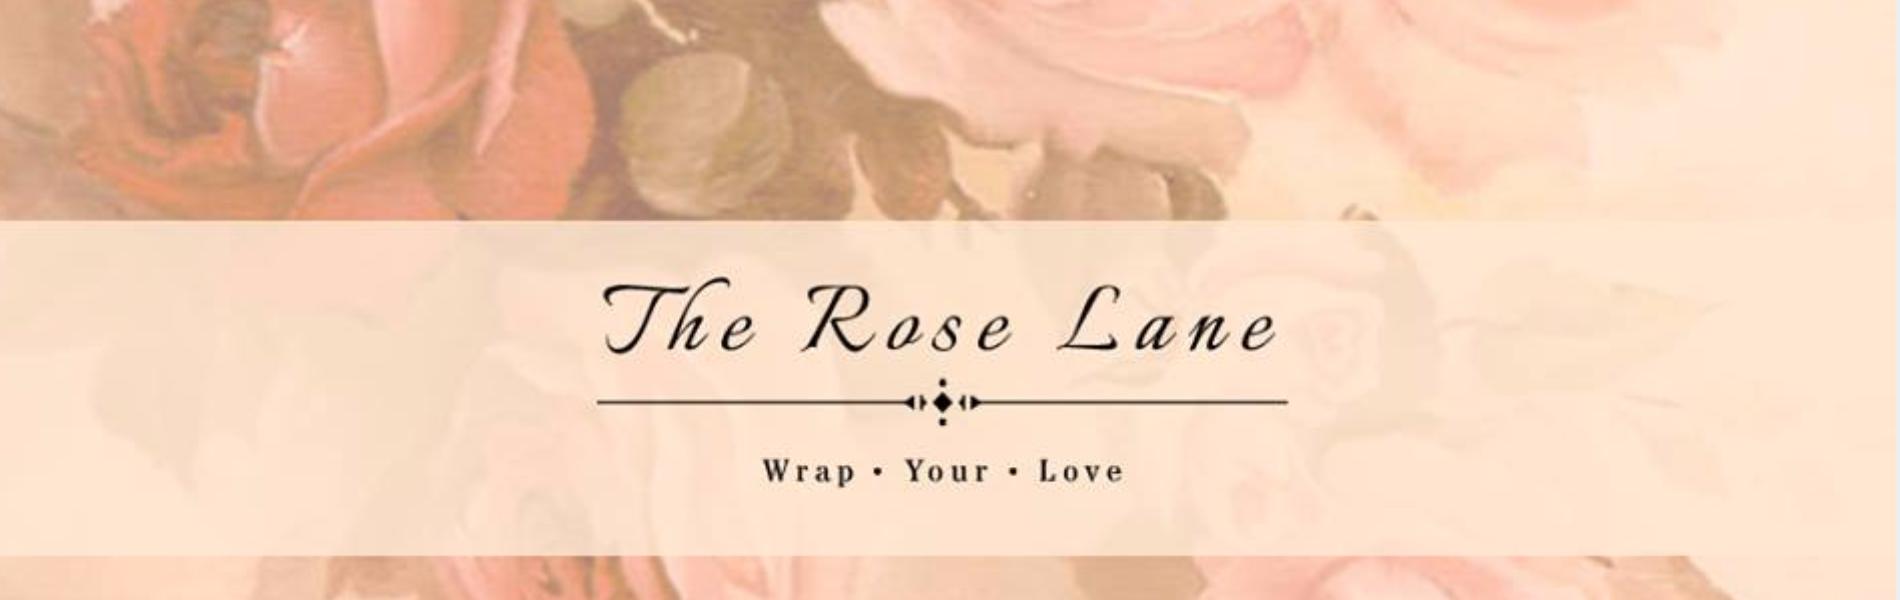 The Rose Lane